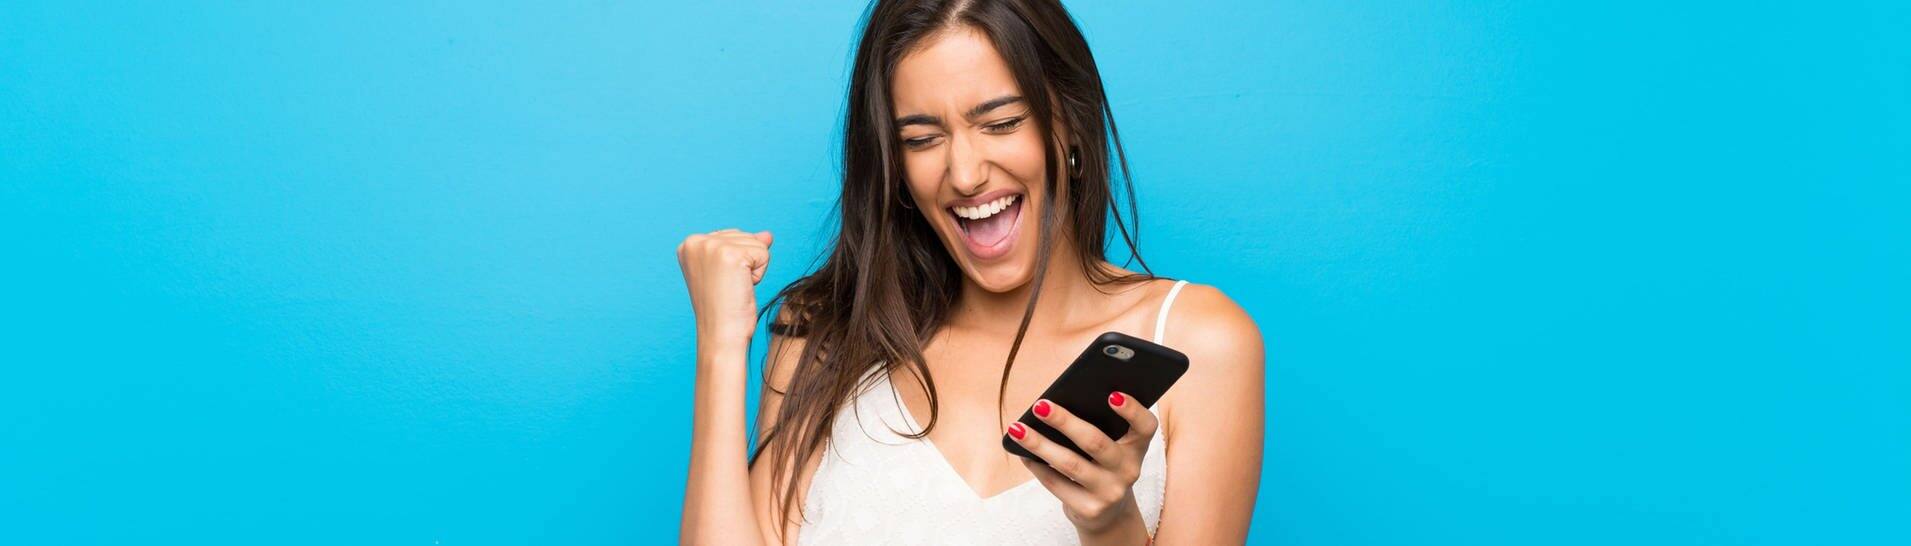 Junge Frau vor blauem Hintergrund mit Handy in der Hand ballt die Faust freudig zusammen und lächelt (Foto: Adobe Stock/luismolinero)